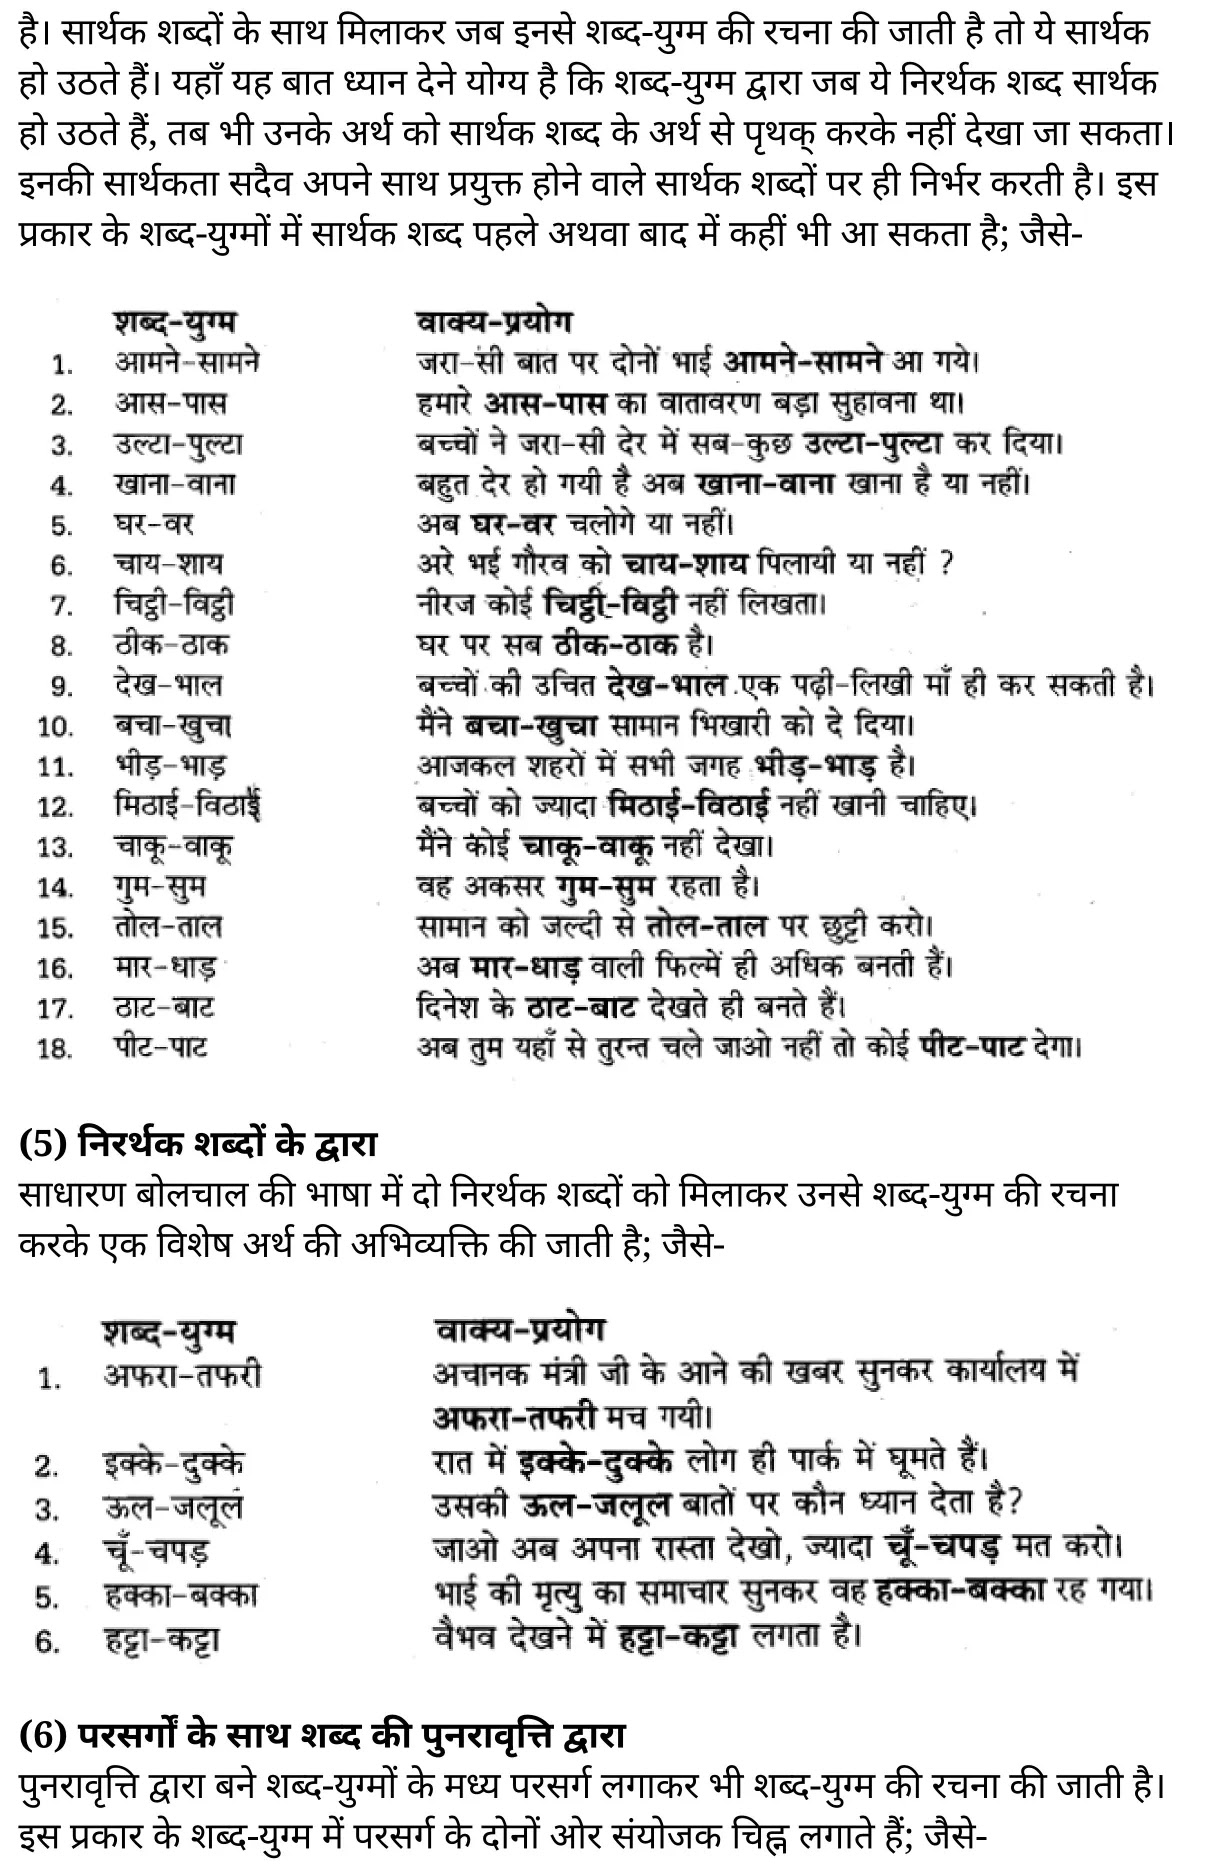 यूपी बोर्ड एनसीईआरटी समाधान "कक्षा 11 सामान्य  हिंदी" शब्दों में सूक्ष्म अन्तर  हिंदी में